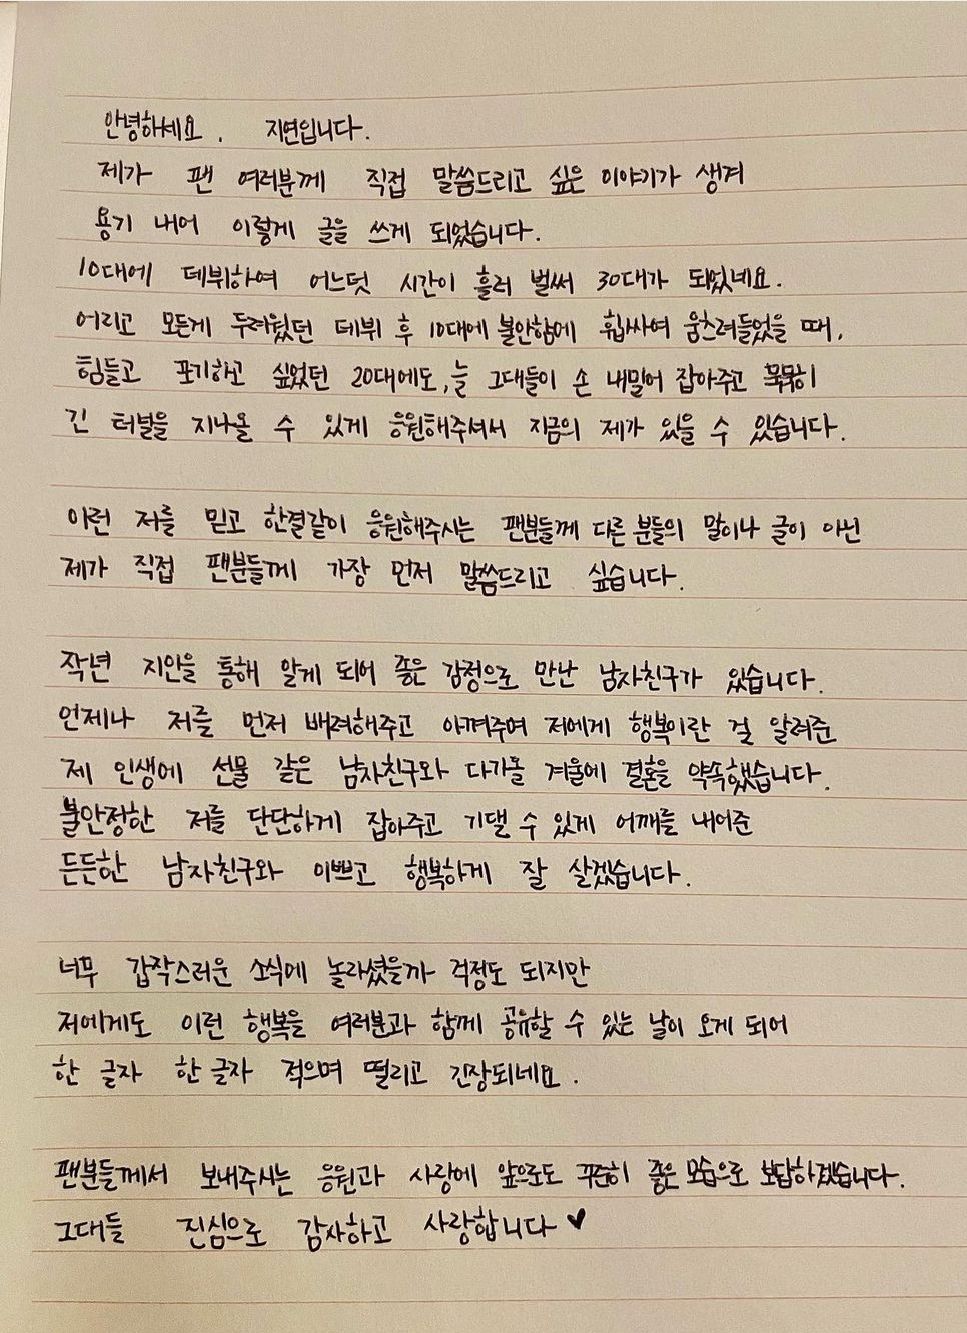 Surat tulisan tangan Jiyeon 